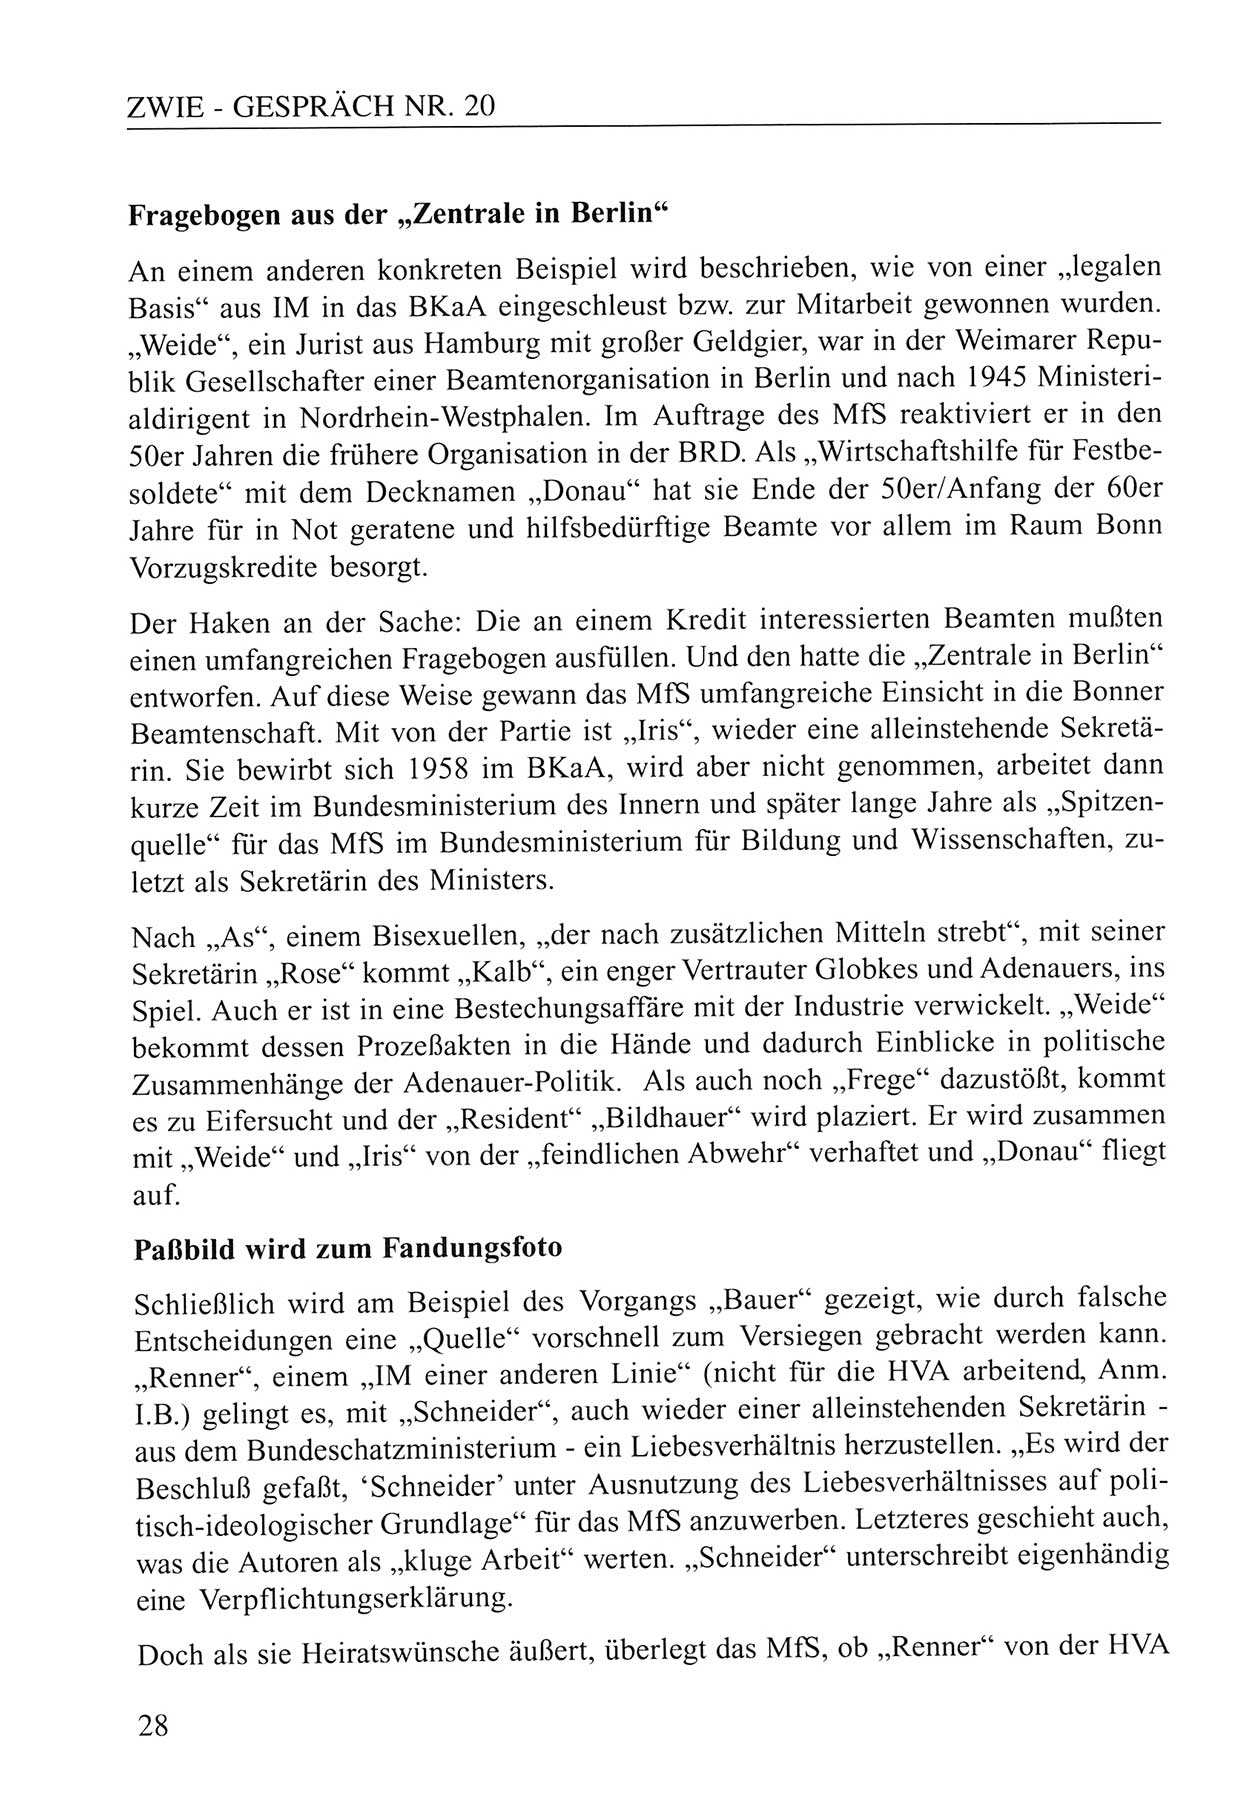 Zwie-Gespräch, Beiträge zum Umgang mit der Staatssicherheits-Vergangenheit [Deutsche Demokratische Republik (DDR)], Ausgabe Nr. 20, Berlin 1994, Seite 28 (Zwie-Gespr. Ausg. 20 1994, S. 28)